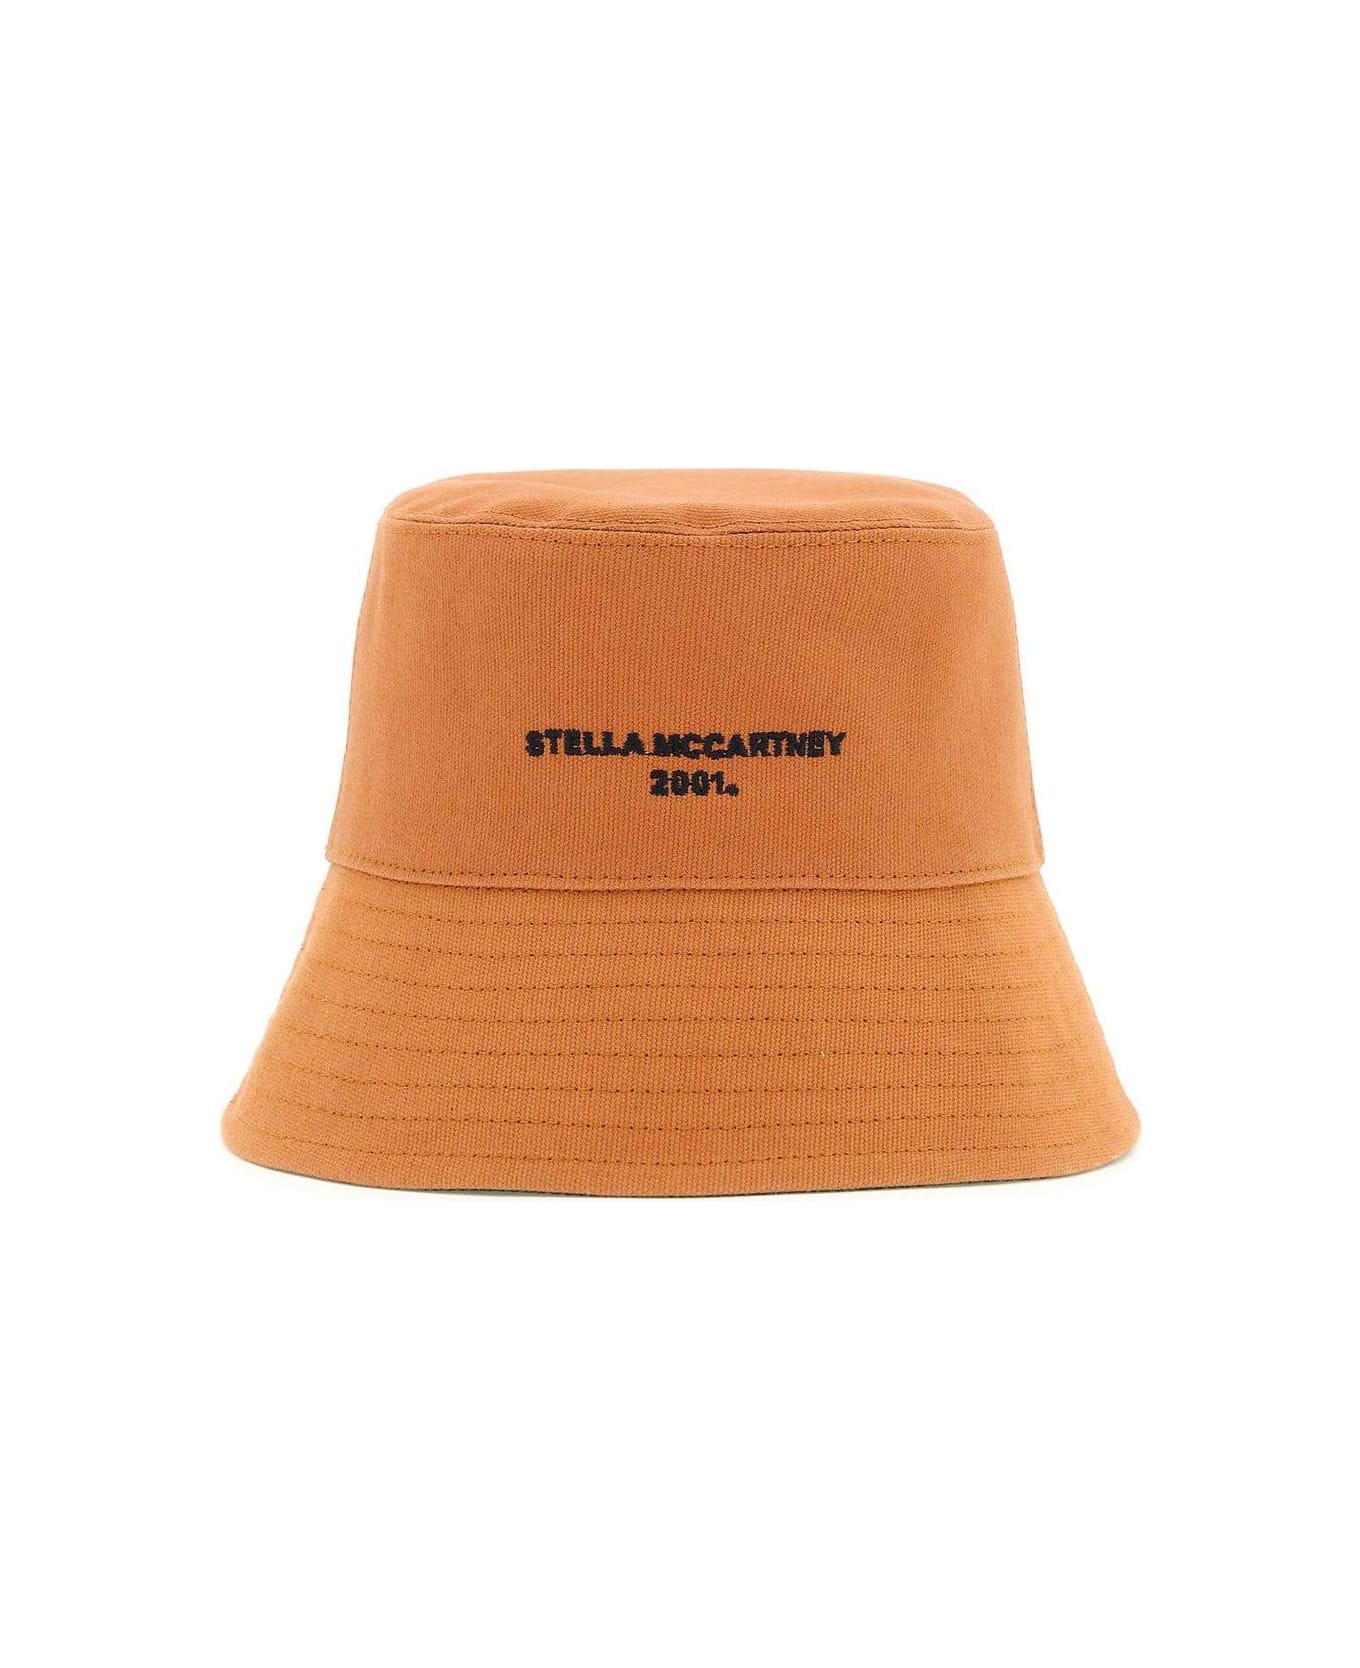 Stella McCartney Logo Embroidered Bucket Hat - Brown